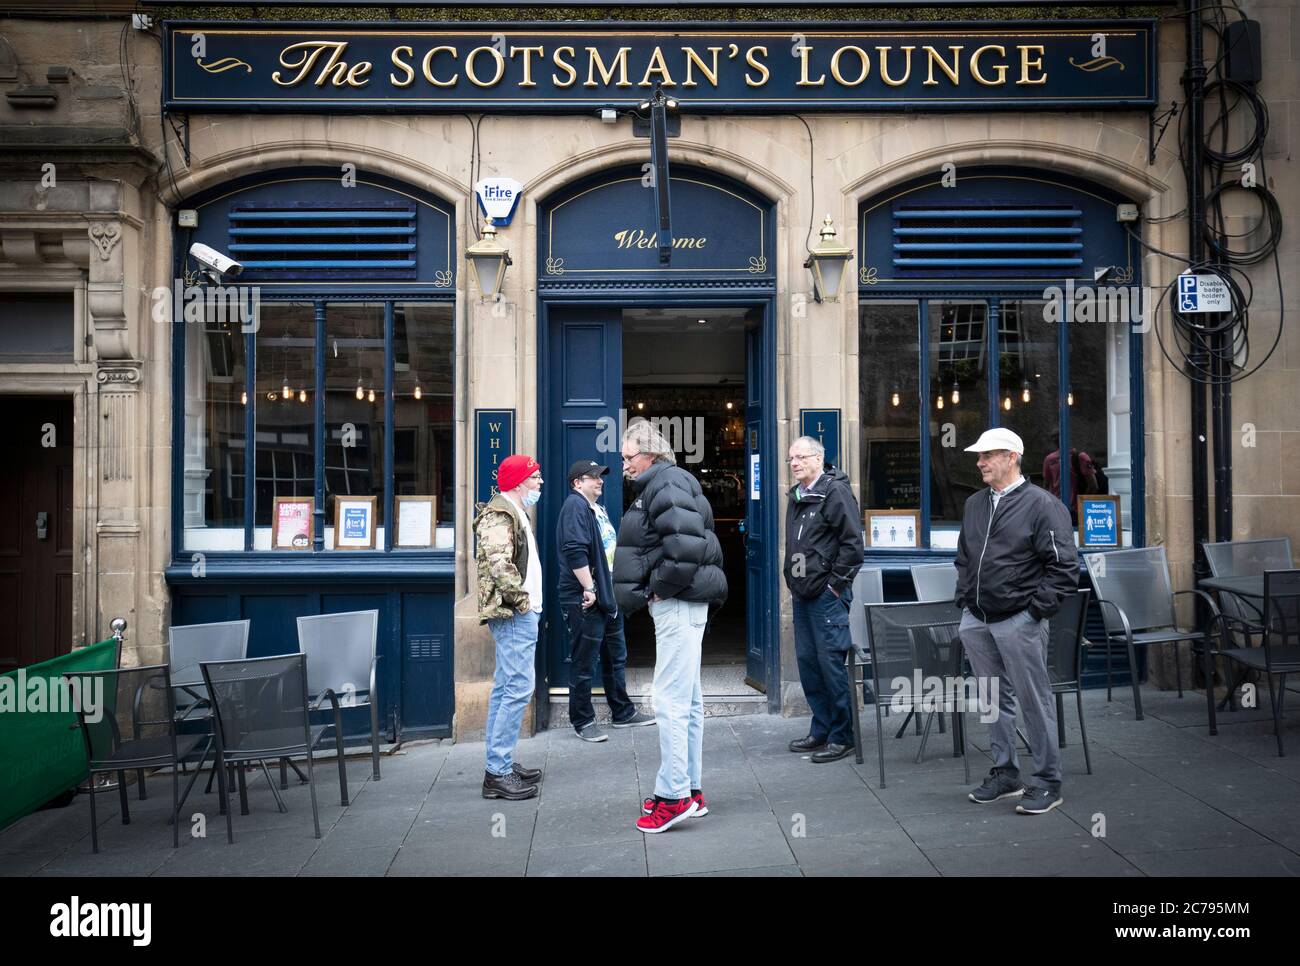 Die Menschen warten auf die Eröffnung vor dem Scotsman's Lounge Pub in Edinburgh, da Pubs, Bars und Restaurants in ganz Schottland zum ersten Mal seit März nach Aufhebung weiterer Beschränkungen für die Sperrung durch Coronaviren Innenbereiche eröffnet haben. Stockfoto